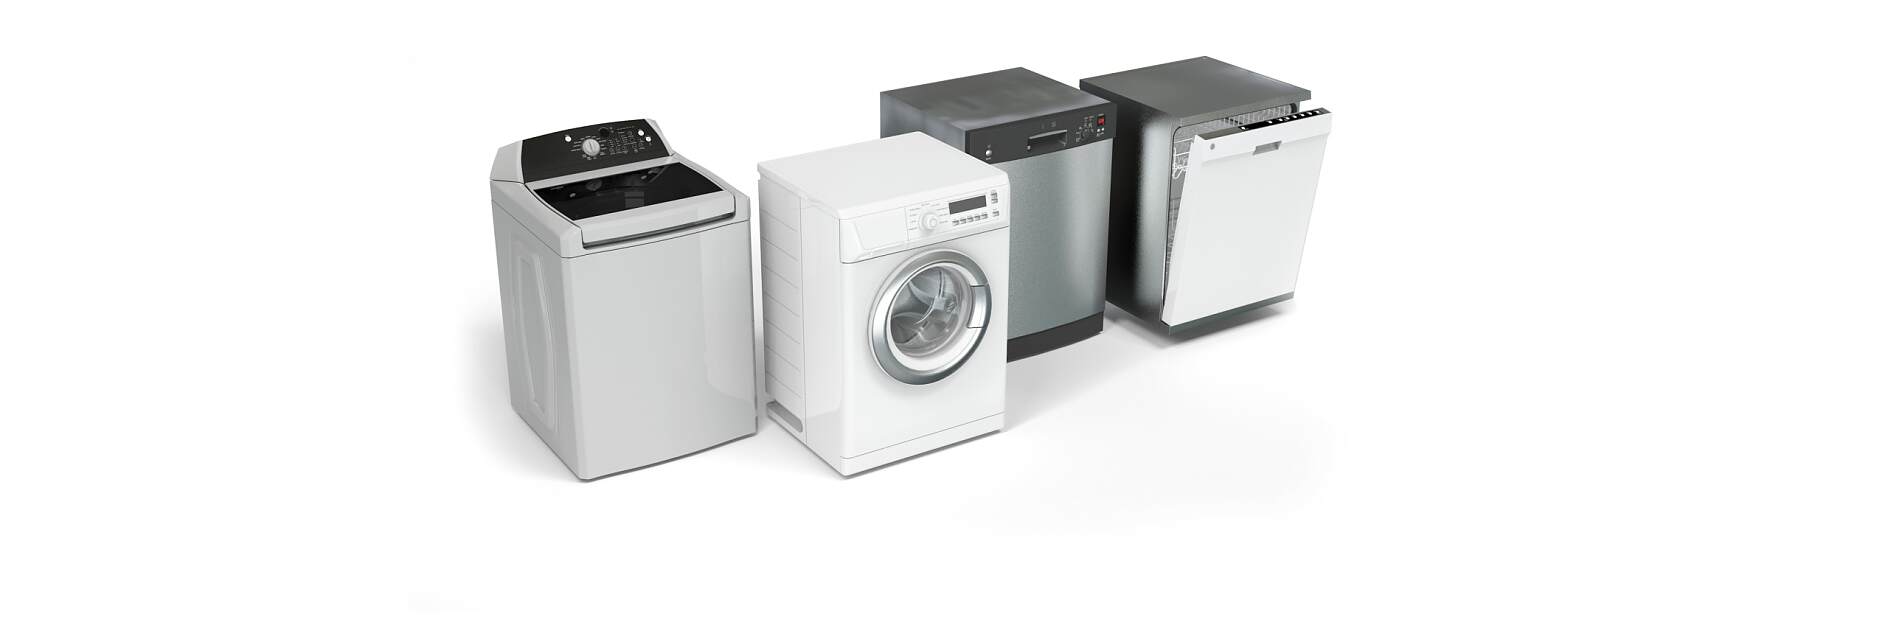 Máquinas de lavar roupa e máquinas de lavar louça